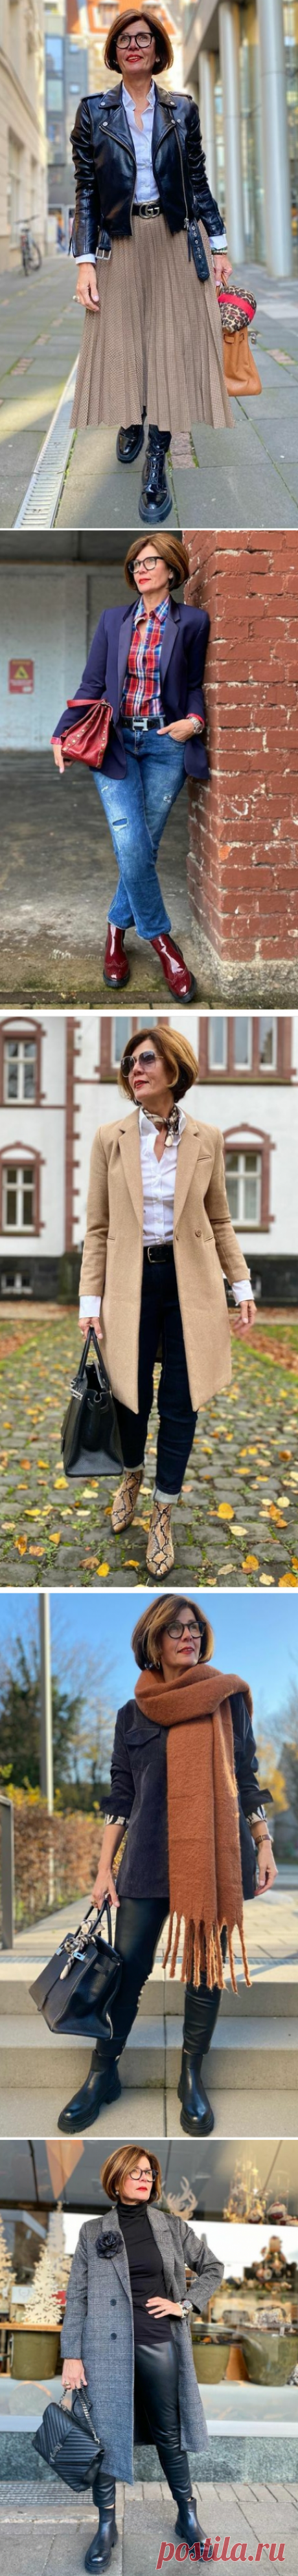 50-летняя учительница из Дюссельдорфа с типом фигуры груша раскрывает модные секреты | PUDRA.fashion | Яндекс Дзен